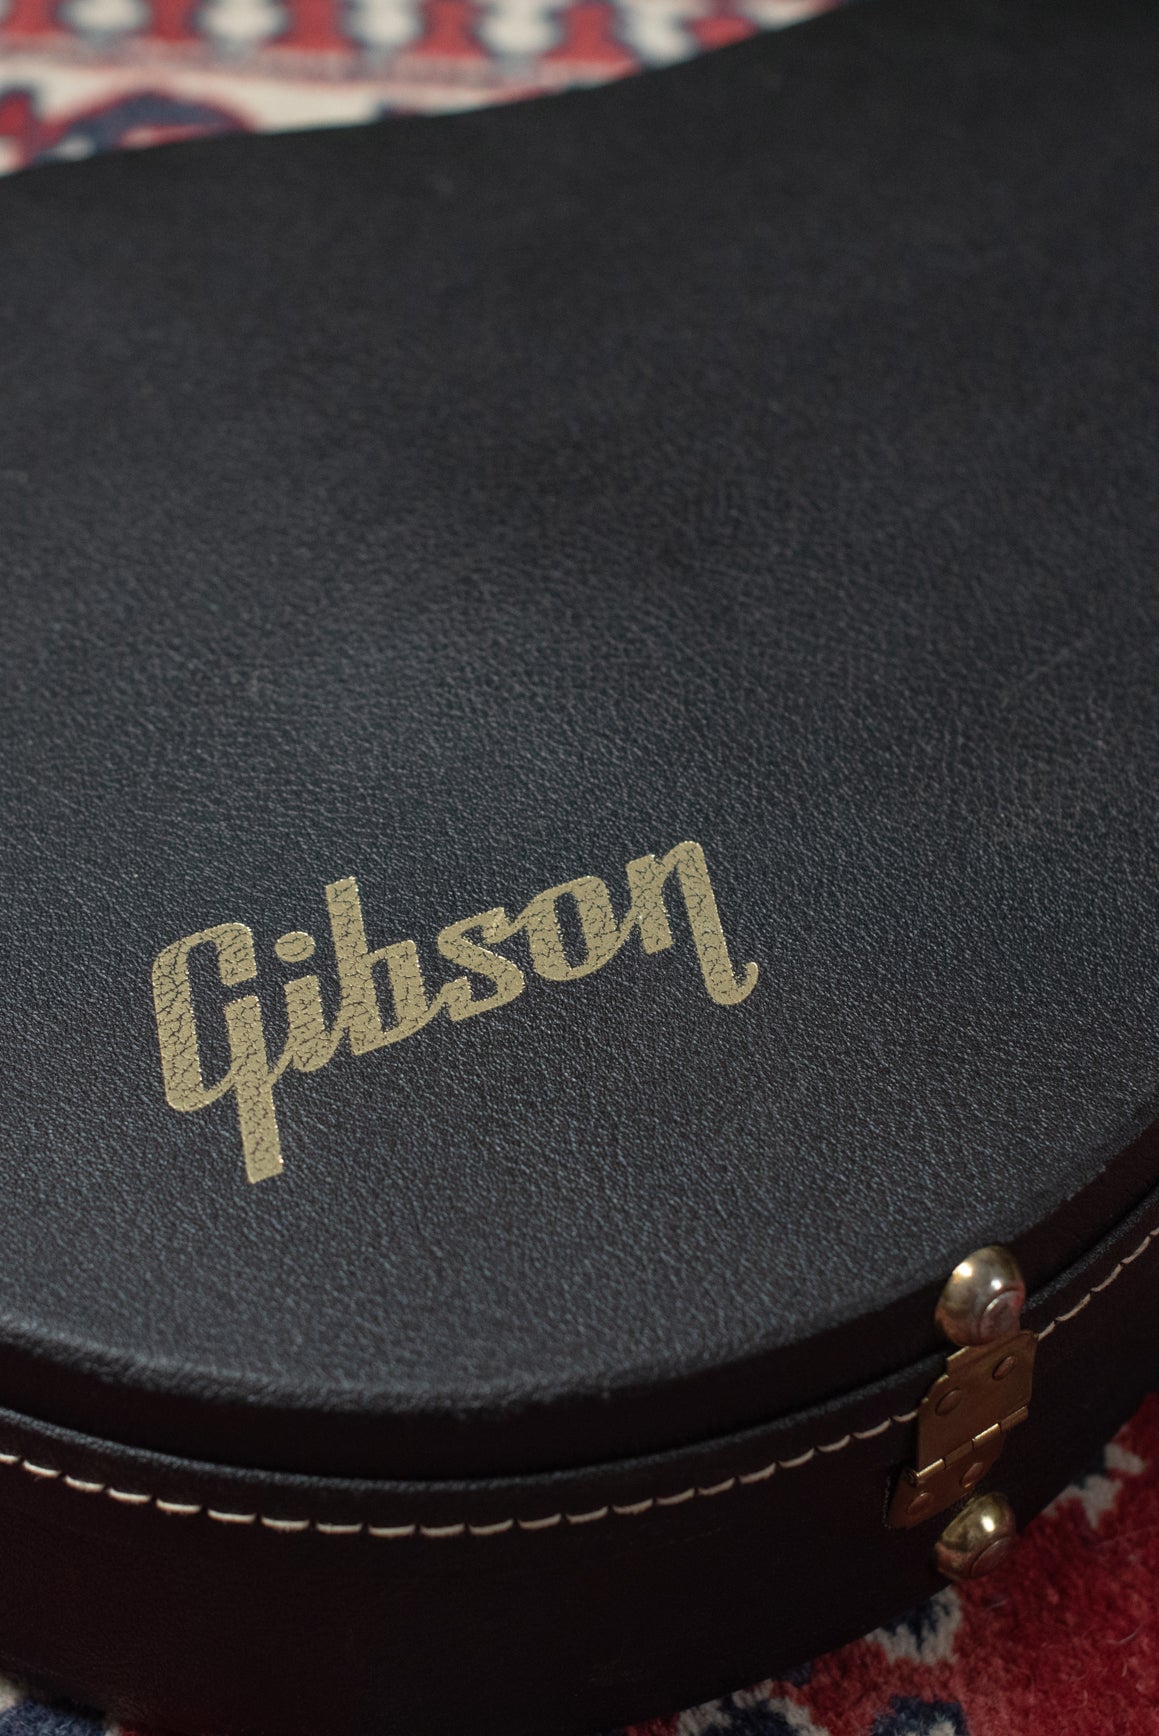 Gibson original case